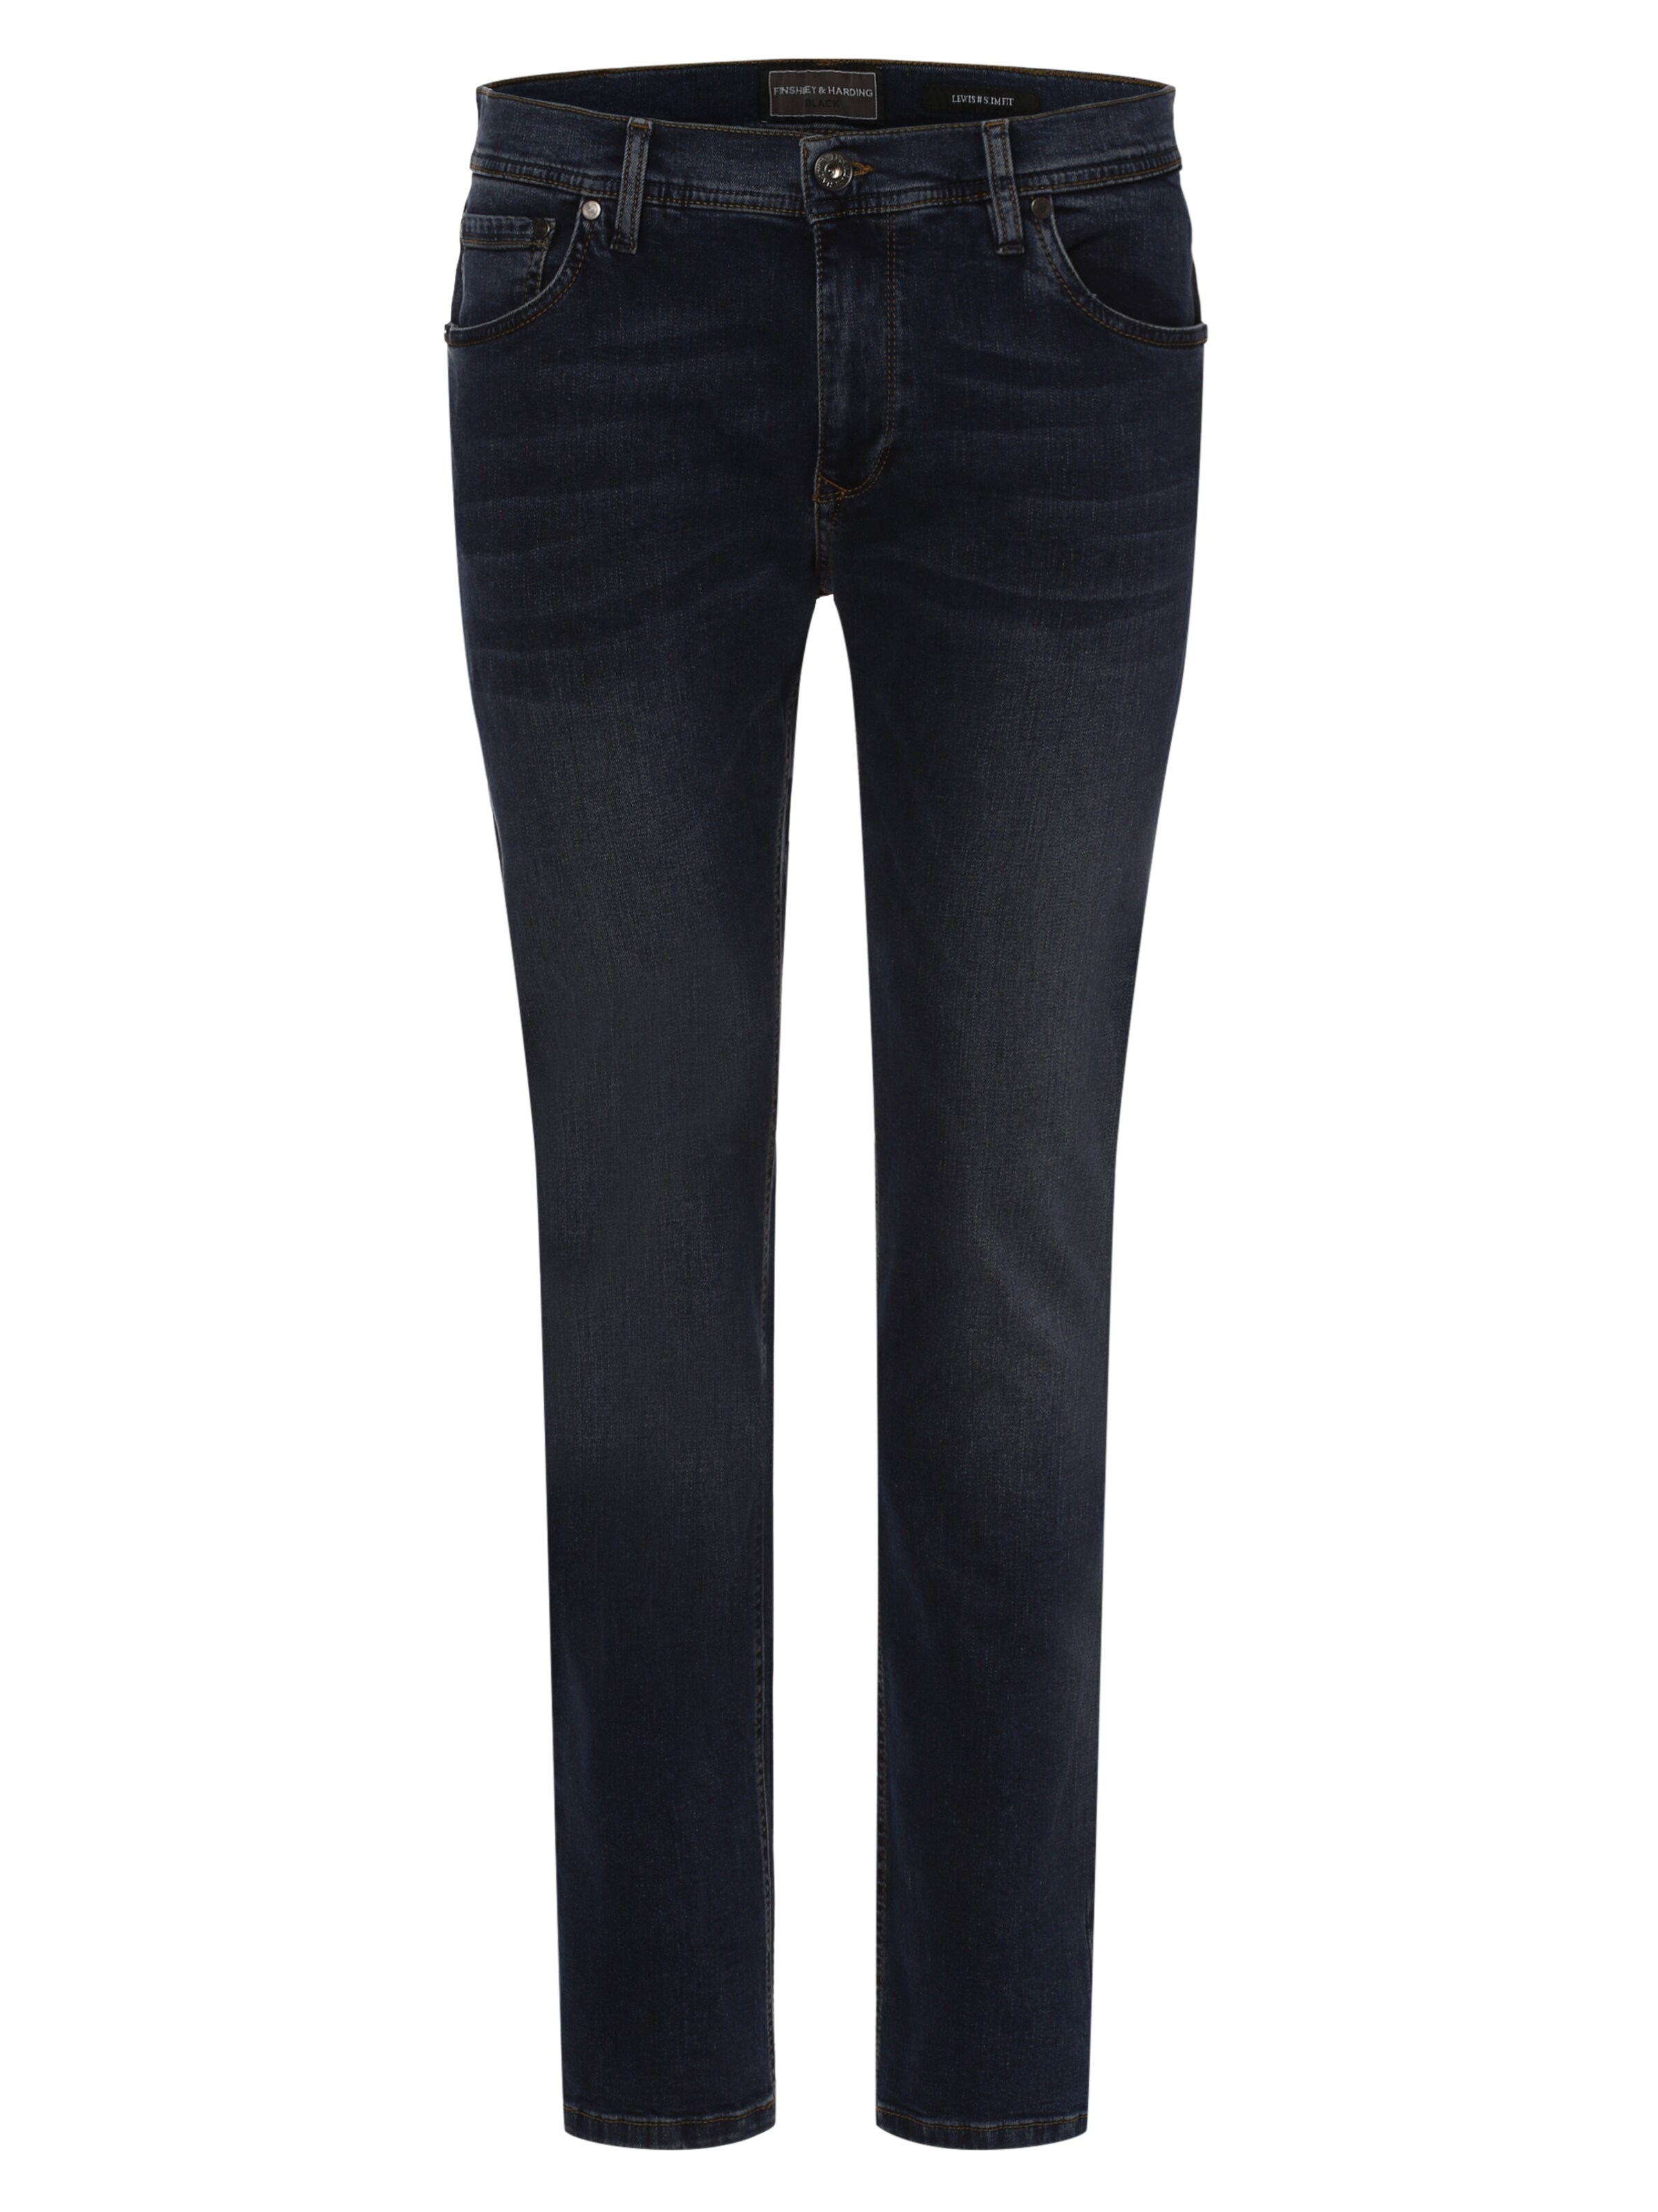 Männer Große Größen Finshley & Harding Jeans in Blau - VK38896